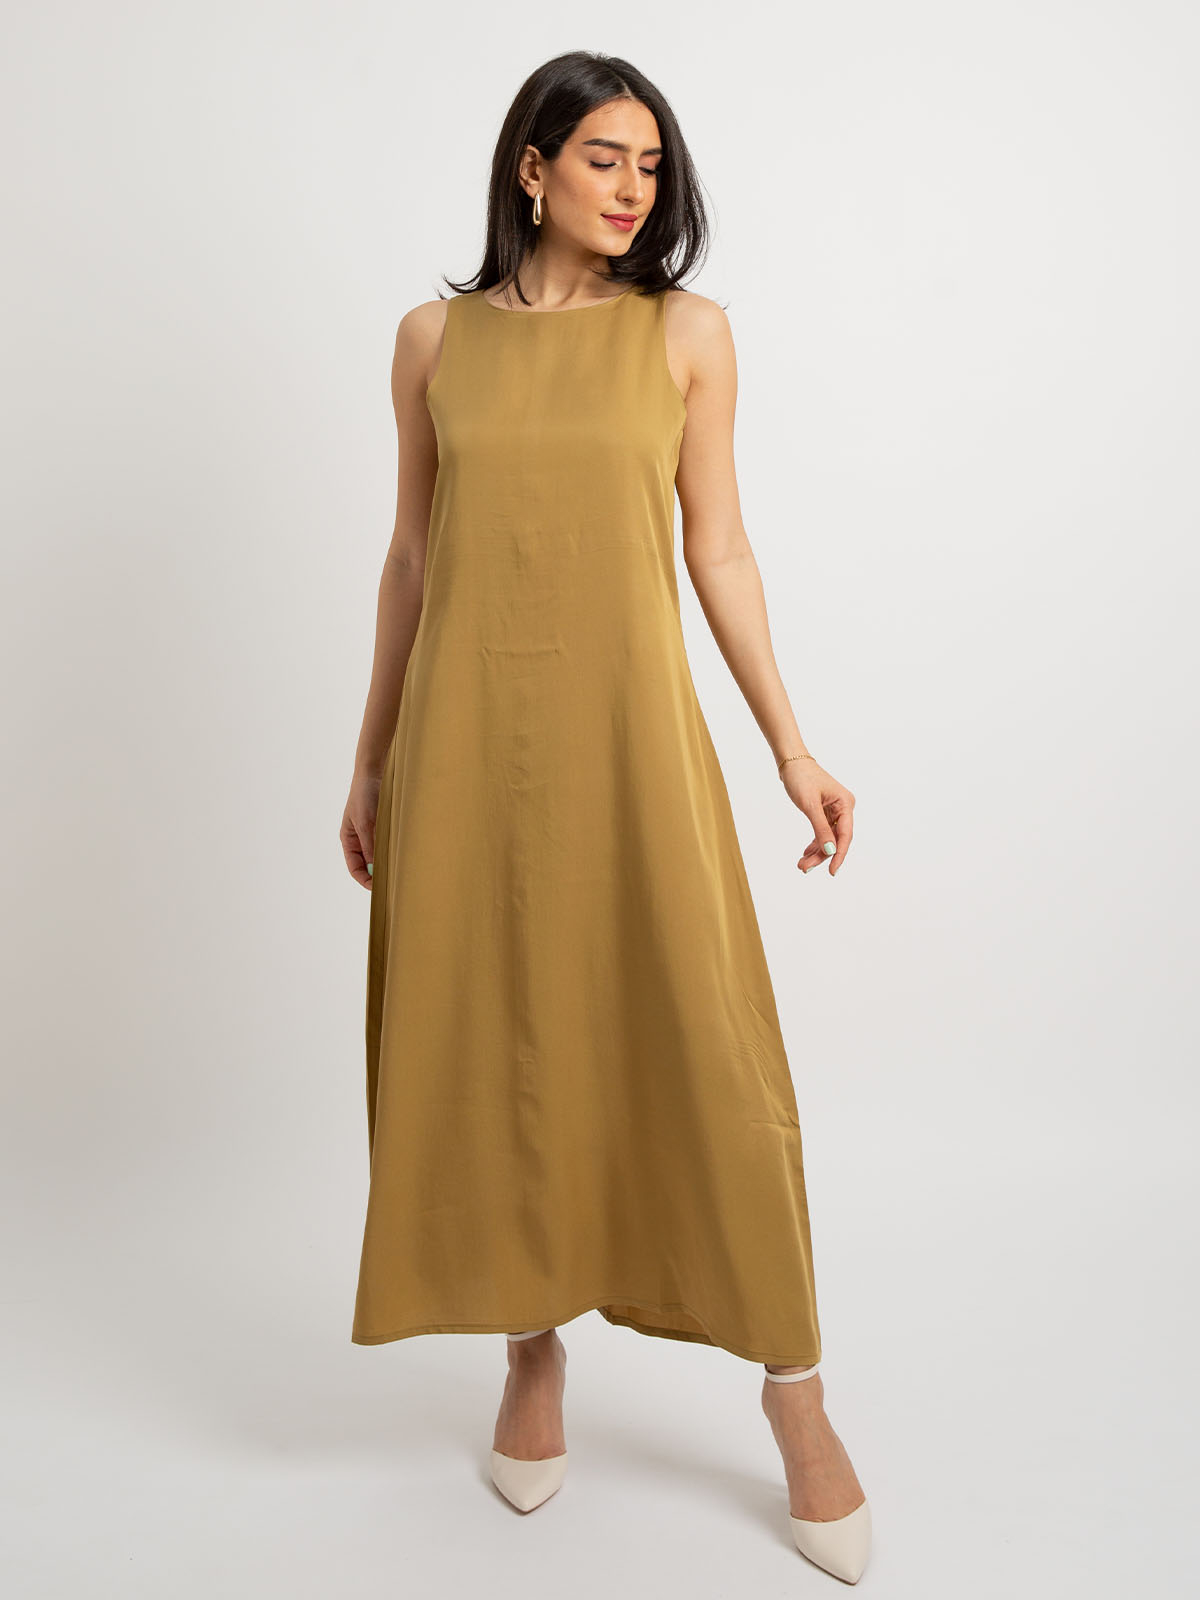 Bronze - Sleeveless Long Dress